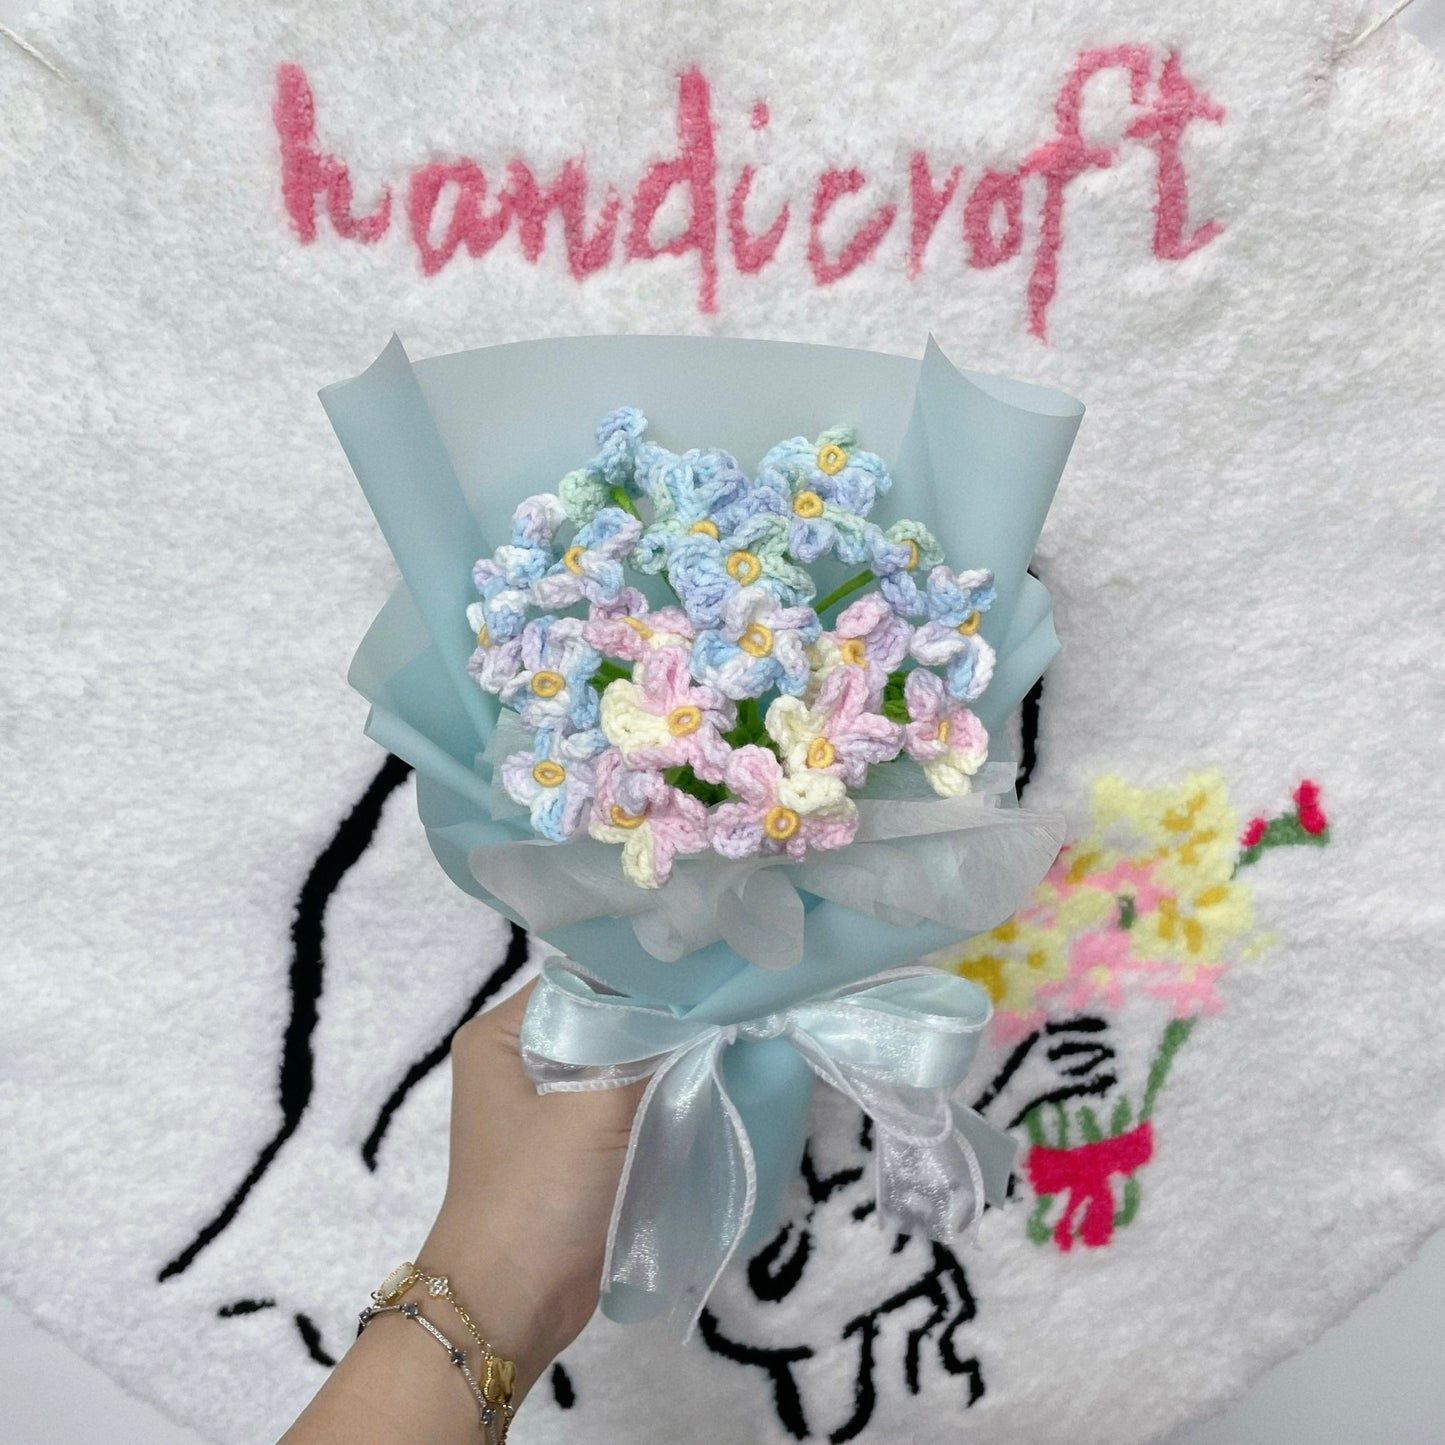 fond memories - forget-me-not crochet flower bouquet 🦋